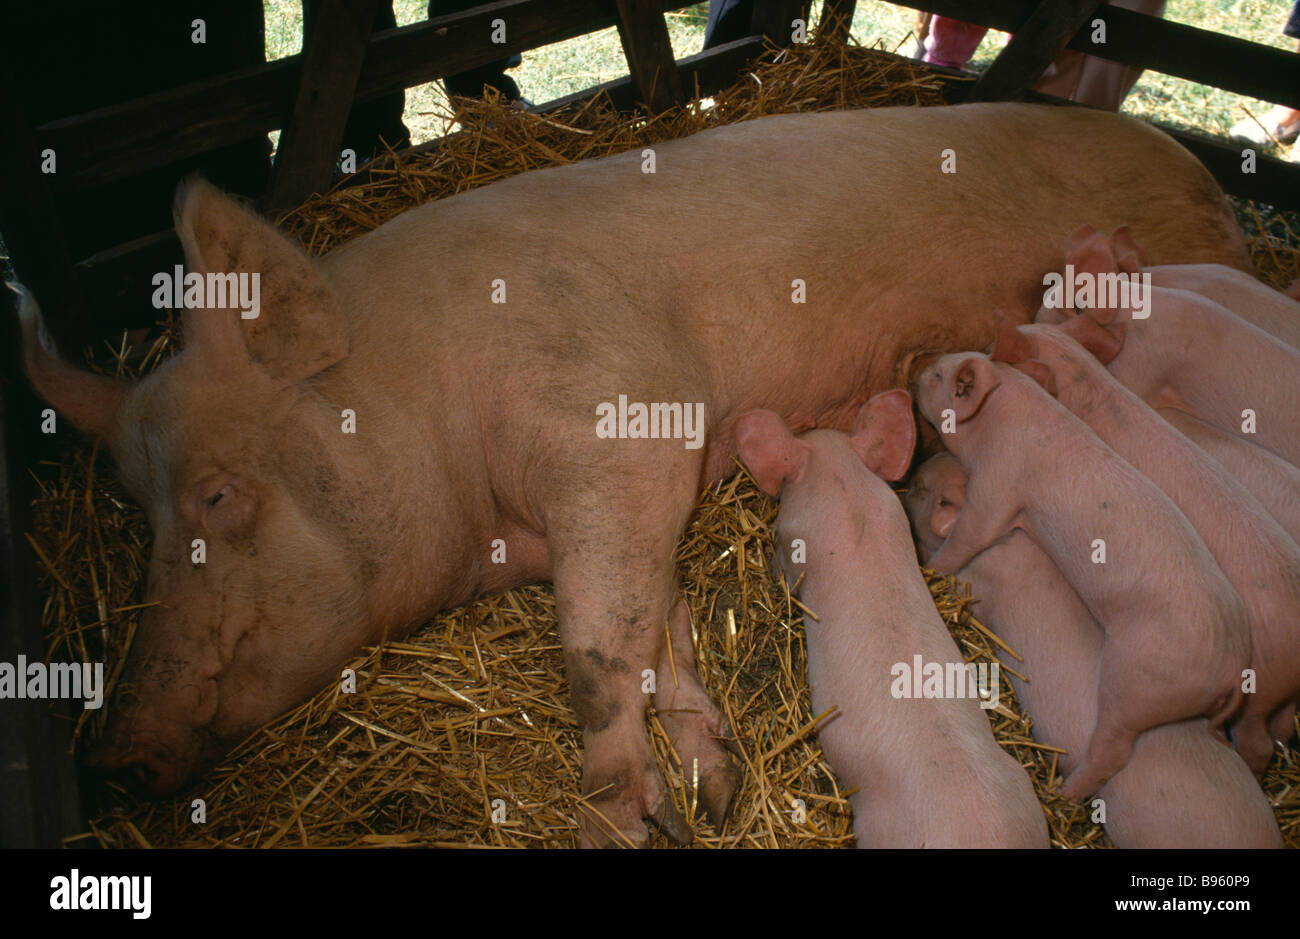 LANDWIRTSCHAFTLICHE Nutztiere Schweine säen liegend auf Stroh in einer Scheune mit Spanferkel Ferkel Stockfoto